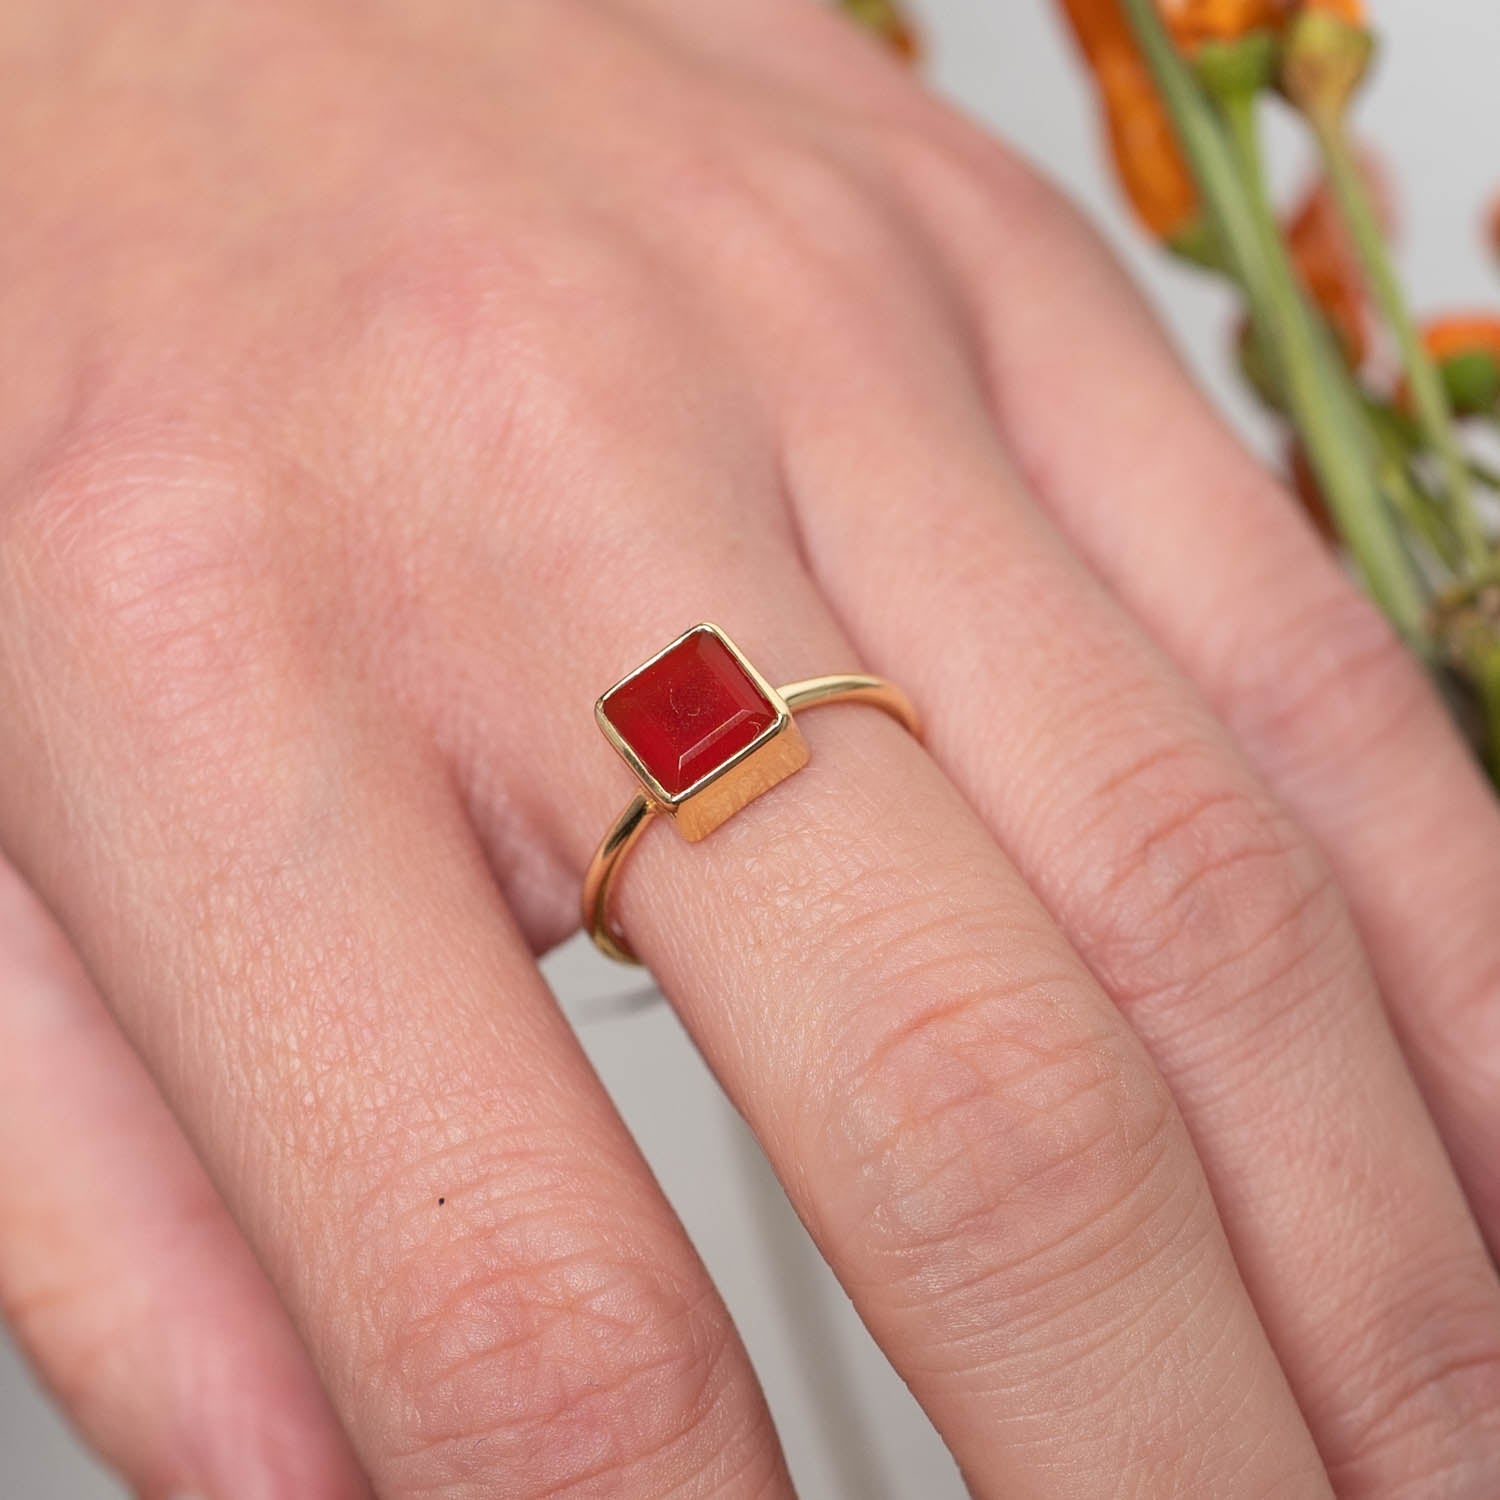 Ring Aline Square Red Onyx - Fleurs des Prés Jewelry